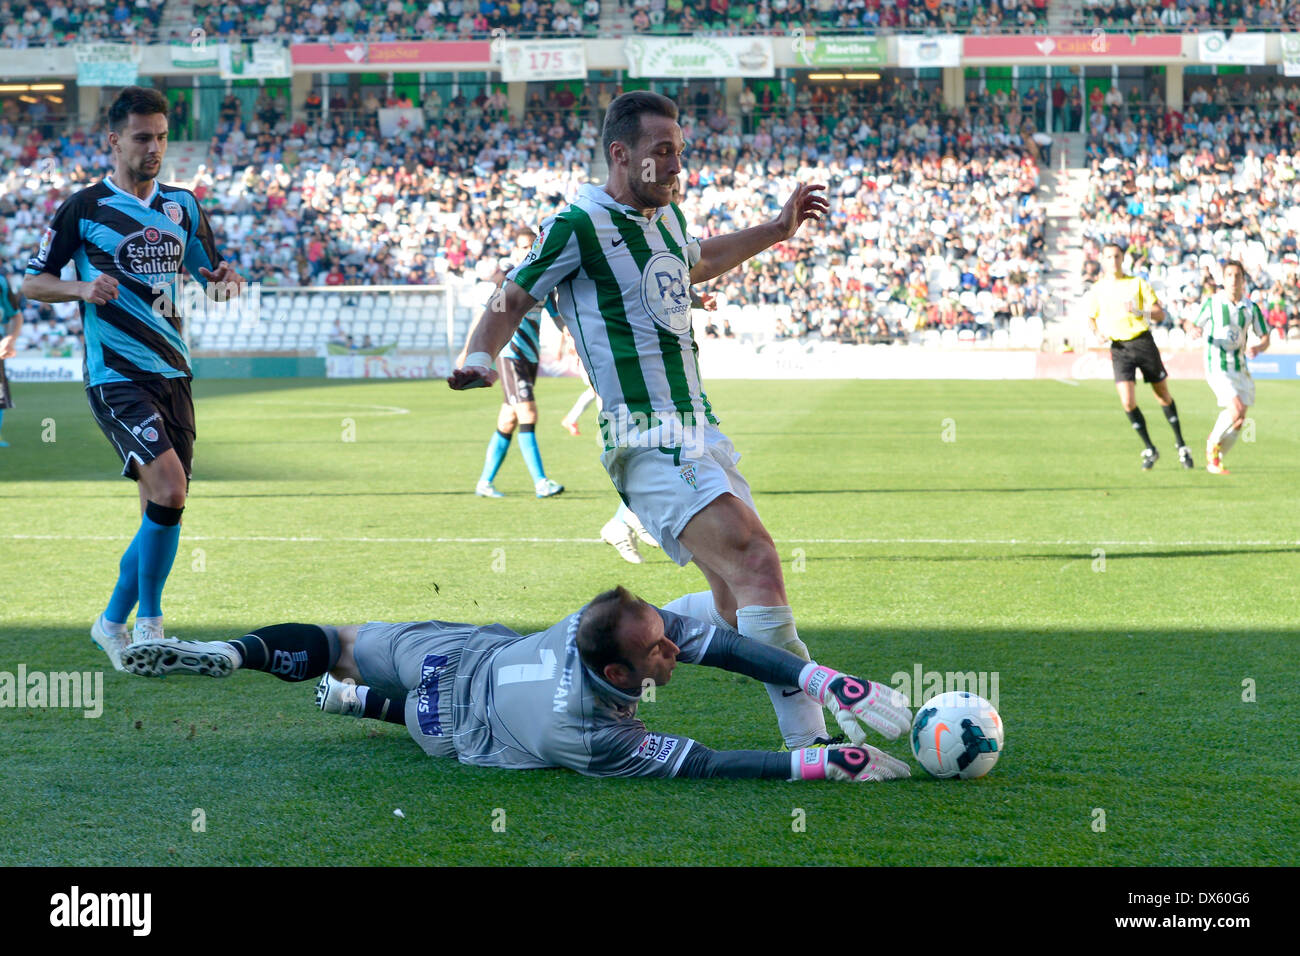 CORDOBA, Spanien - März 16: Xisco Jimenez W(9) in Aktion während Spiel Liga Cordoba (W) Vs Lugo (B)(1-1) bei der kommunalen Stadiu Stockfoto